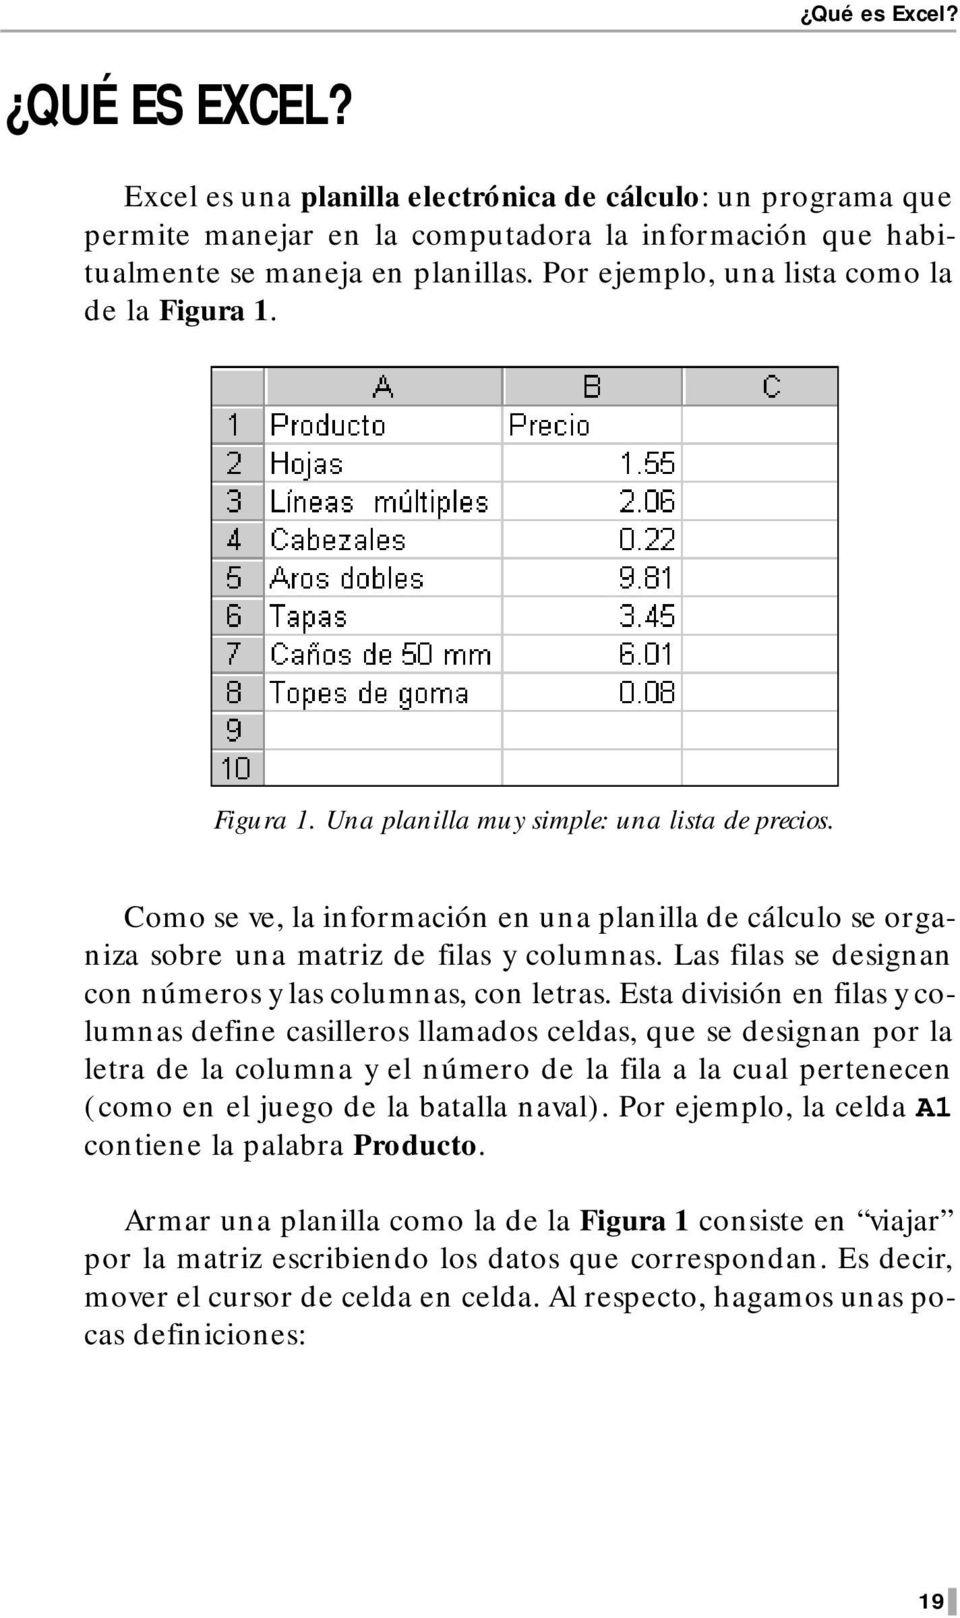 Como se ve, la información en una planilla de cálculo se organiza sobre una matriz de filas y columnas. Las filas se designan con números y las columnas, con letras.